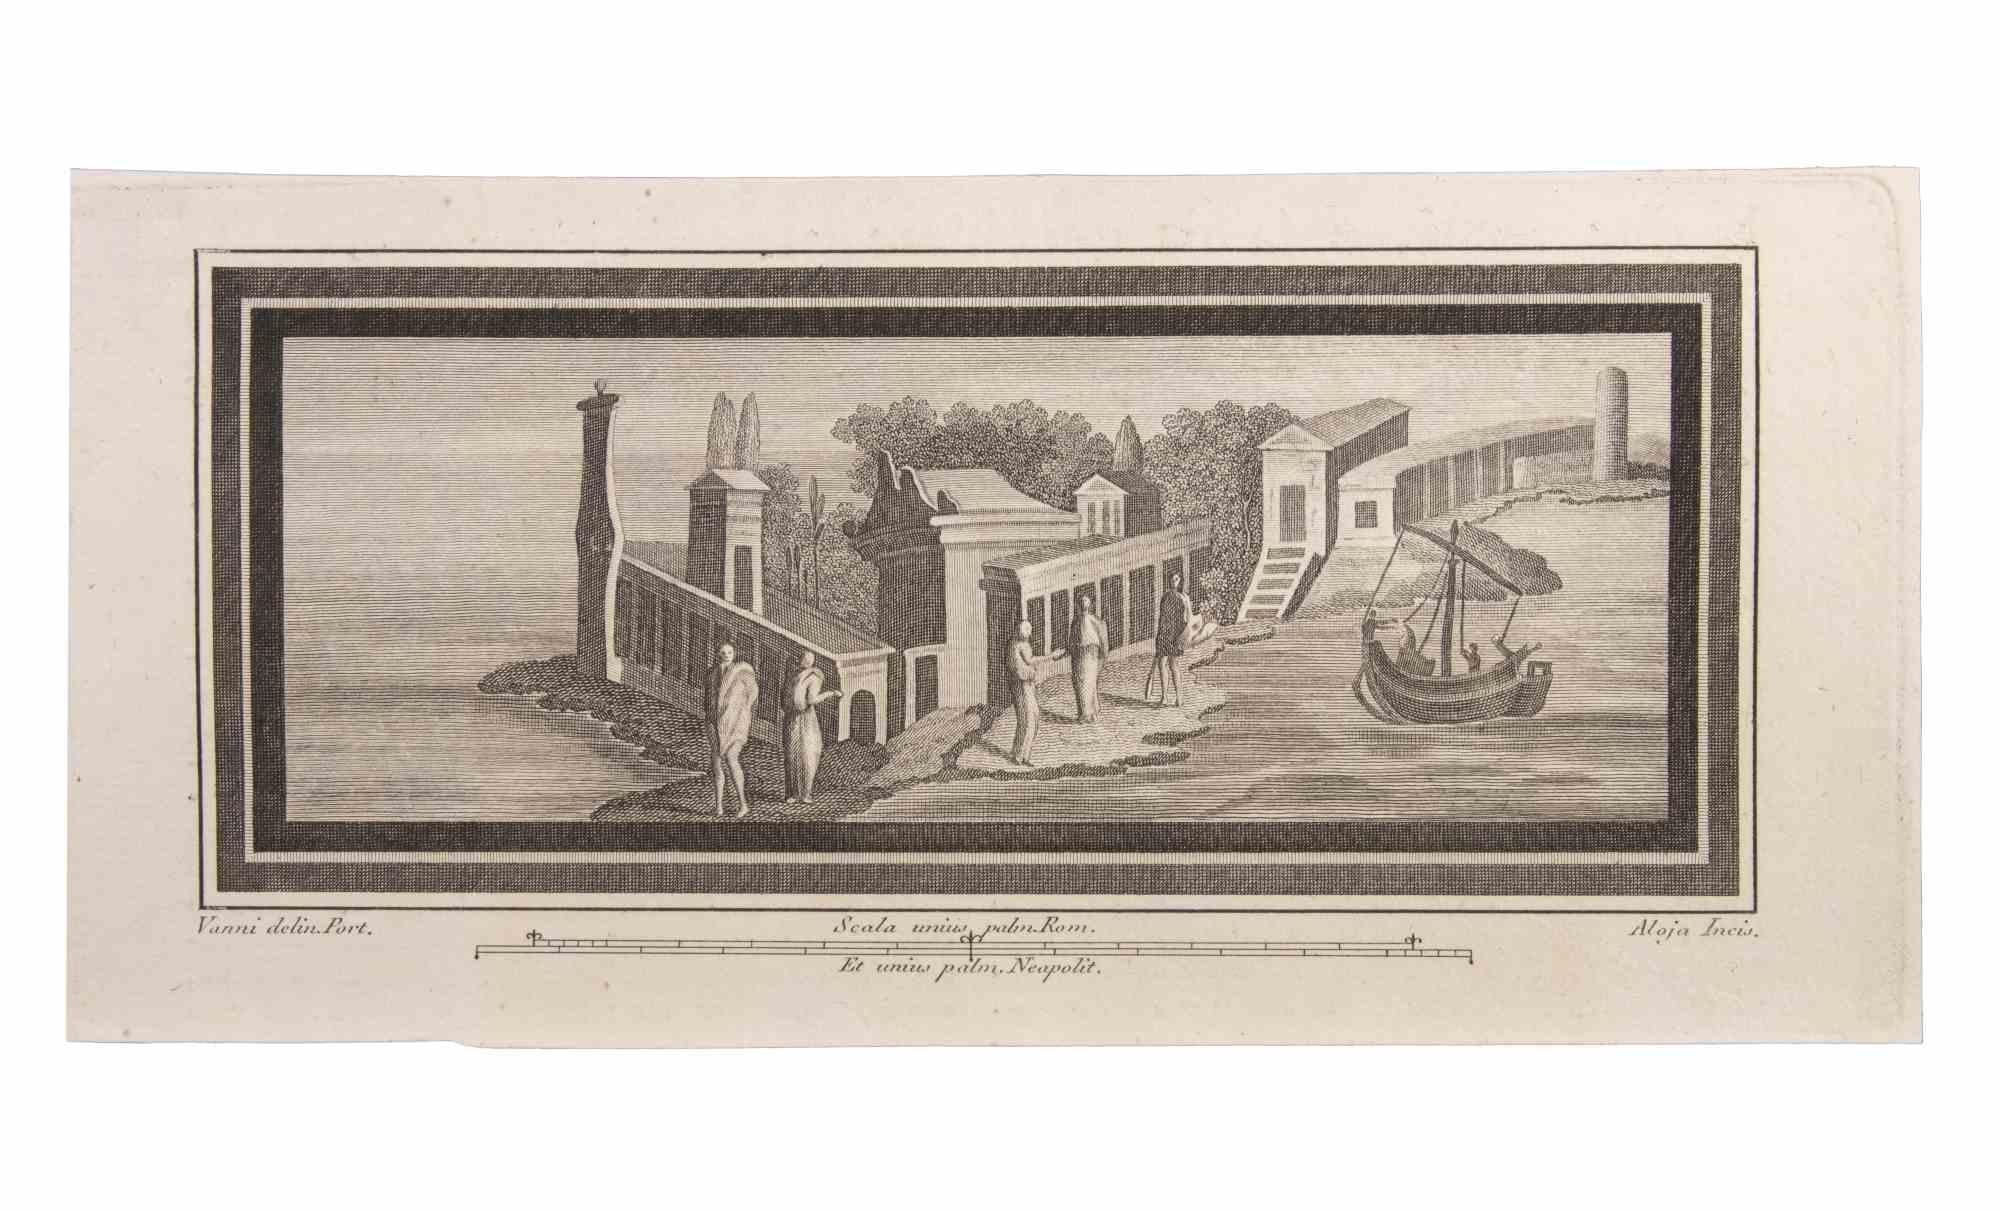 Seascapes With Monuments and Figures ist eine Radierung realisiert von  Luigi Aloja (1783-1837).

Die Radierung gehört zu der Druckserie "Antiquities of Herculaneum Exposed" (Originaltitel: "Le Antichità di Ercolano Esposte"), einem achtbändigen